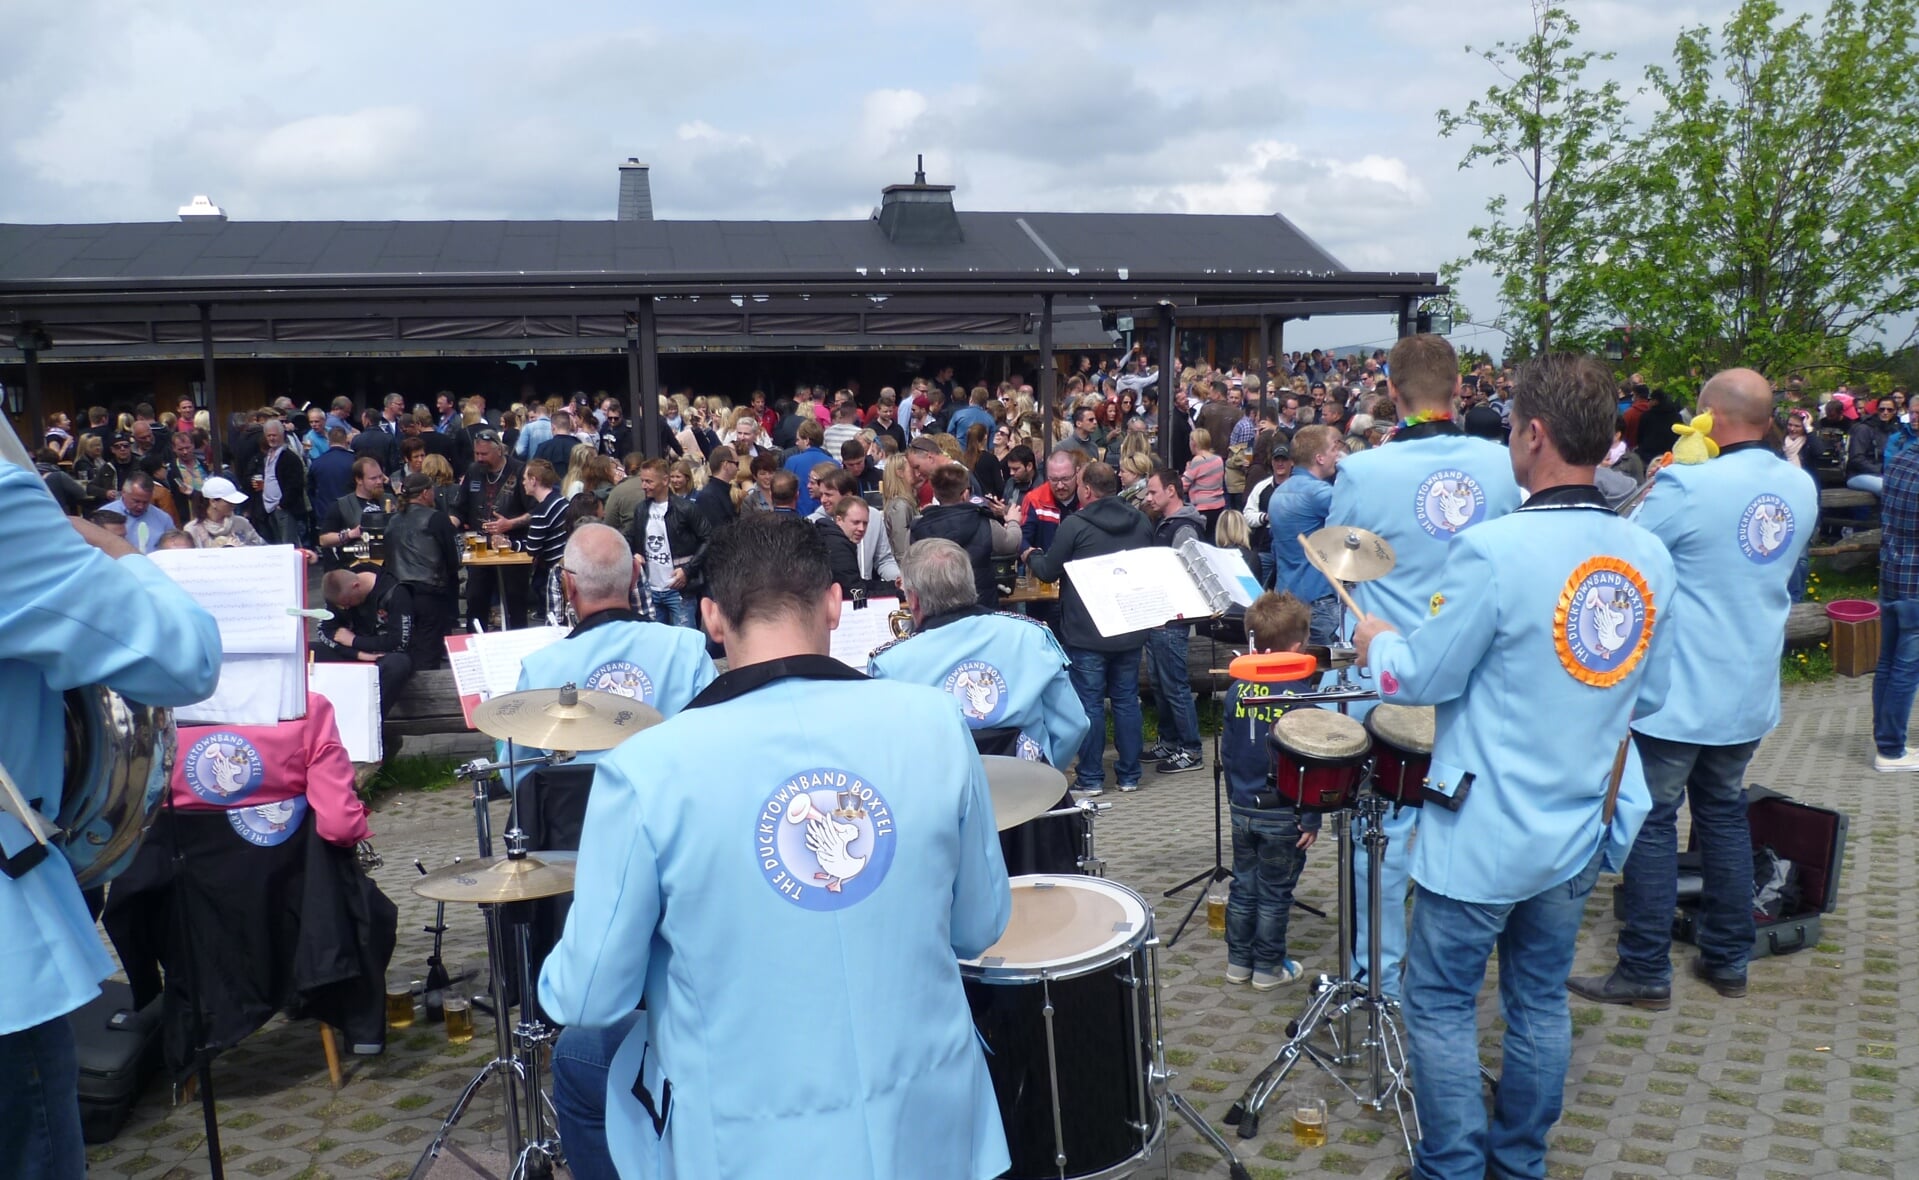 The Ducktownband uit Boxtel speelde op Eerste Pinksterdag voor een duizendkoppig publiek in het Duitse Hochsauerland.